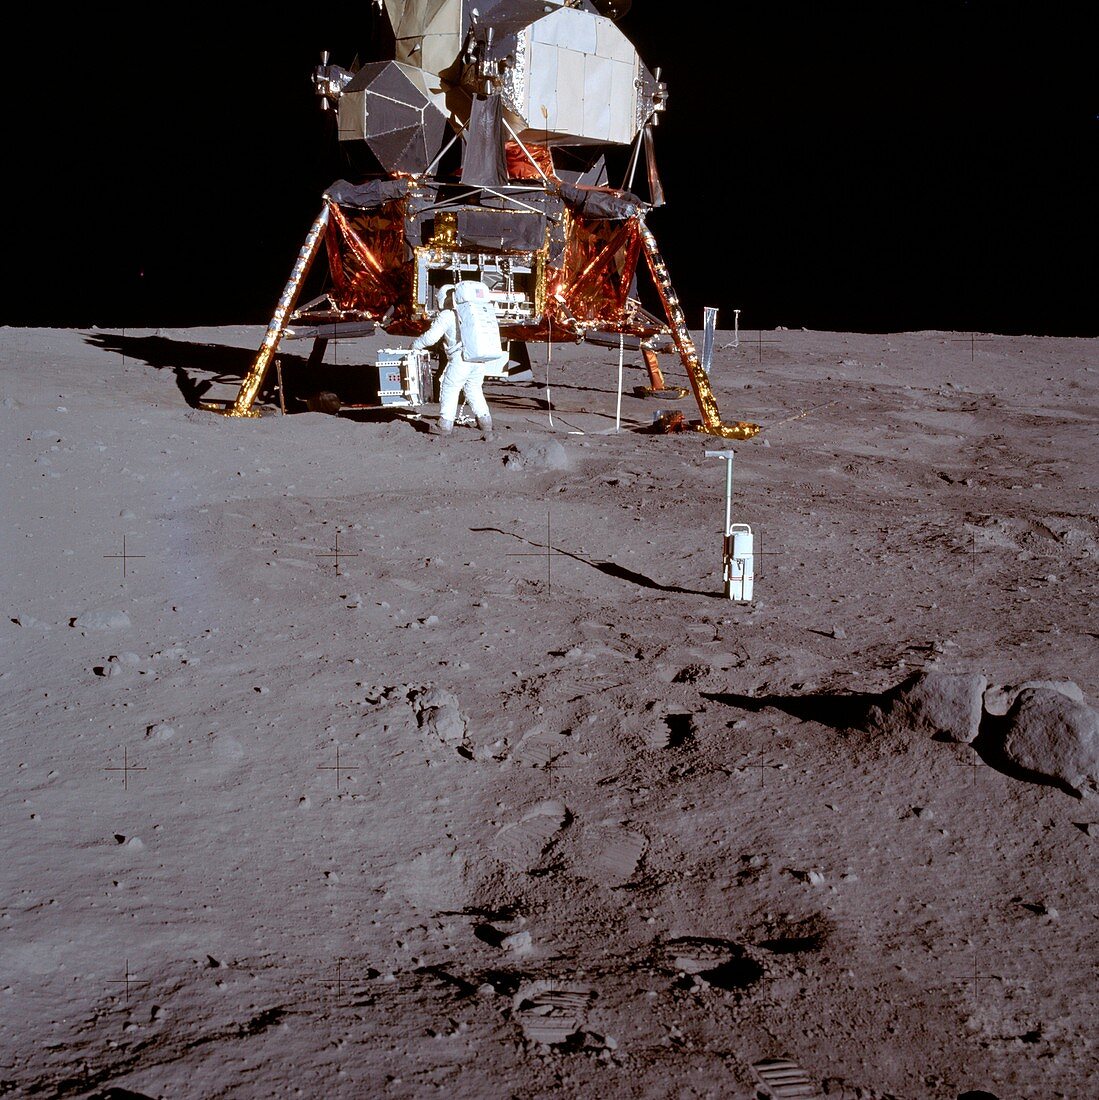 Apollo 11 astronaut Buzz Aldrin near lunar module